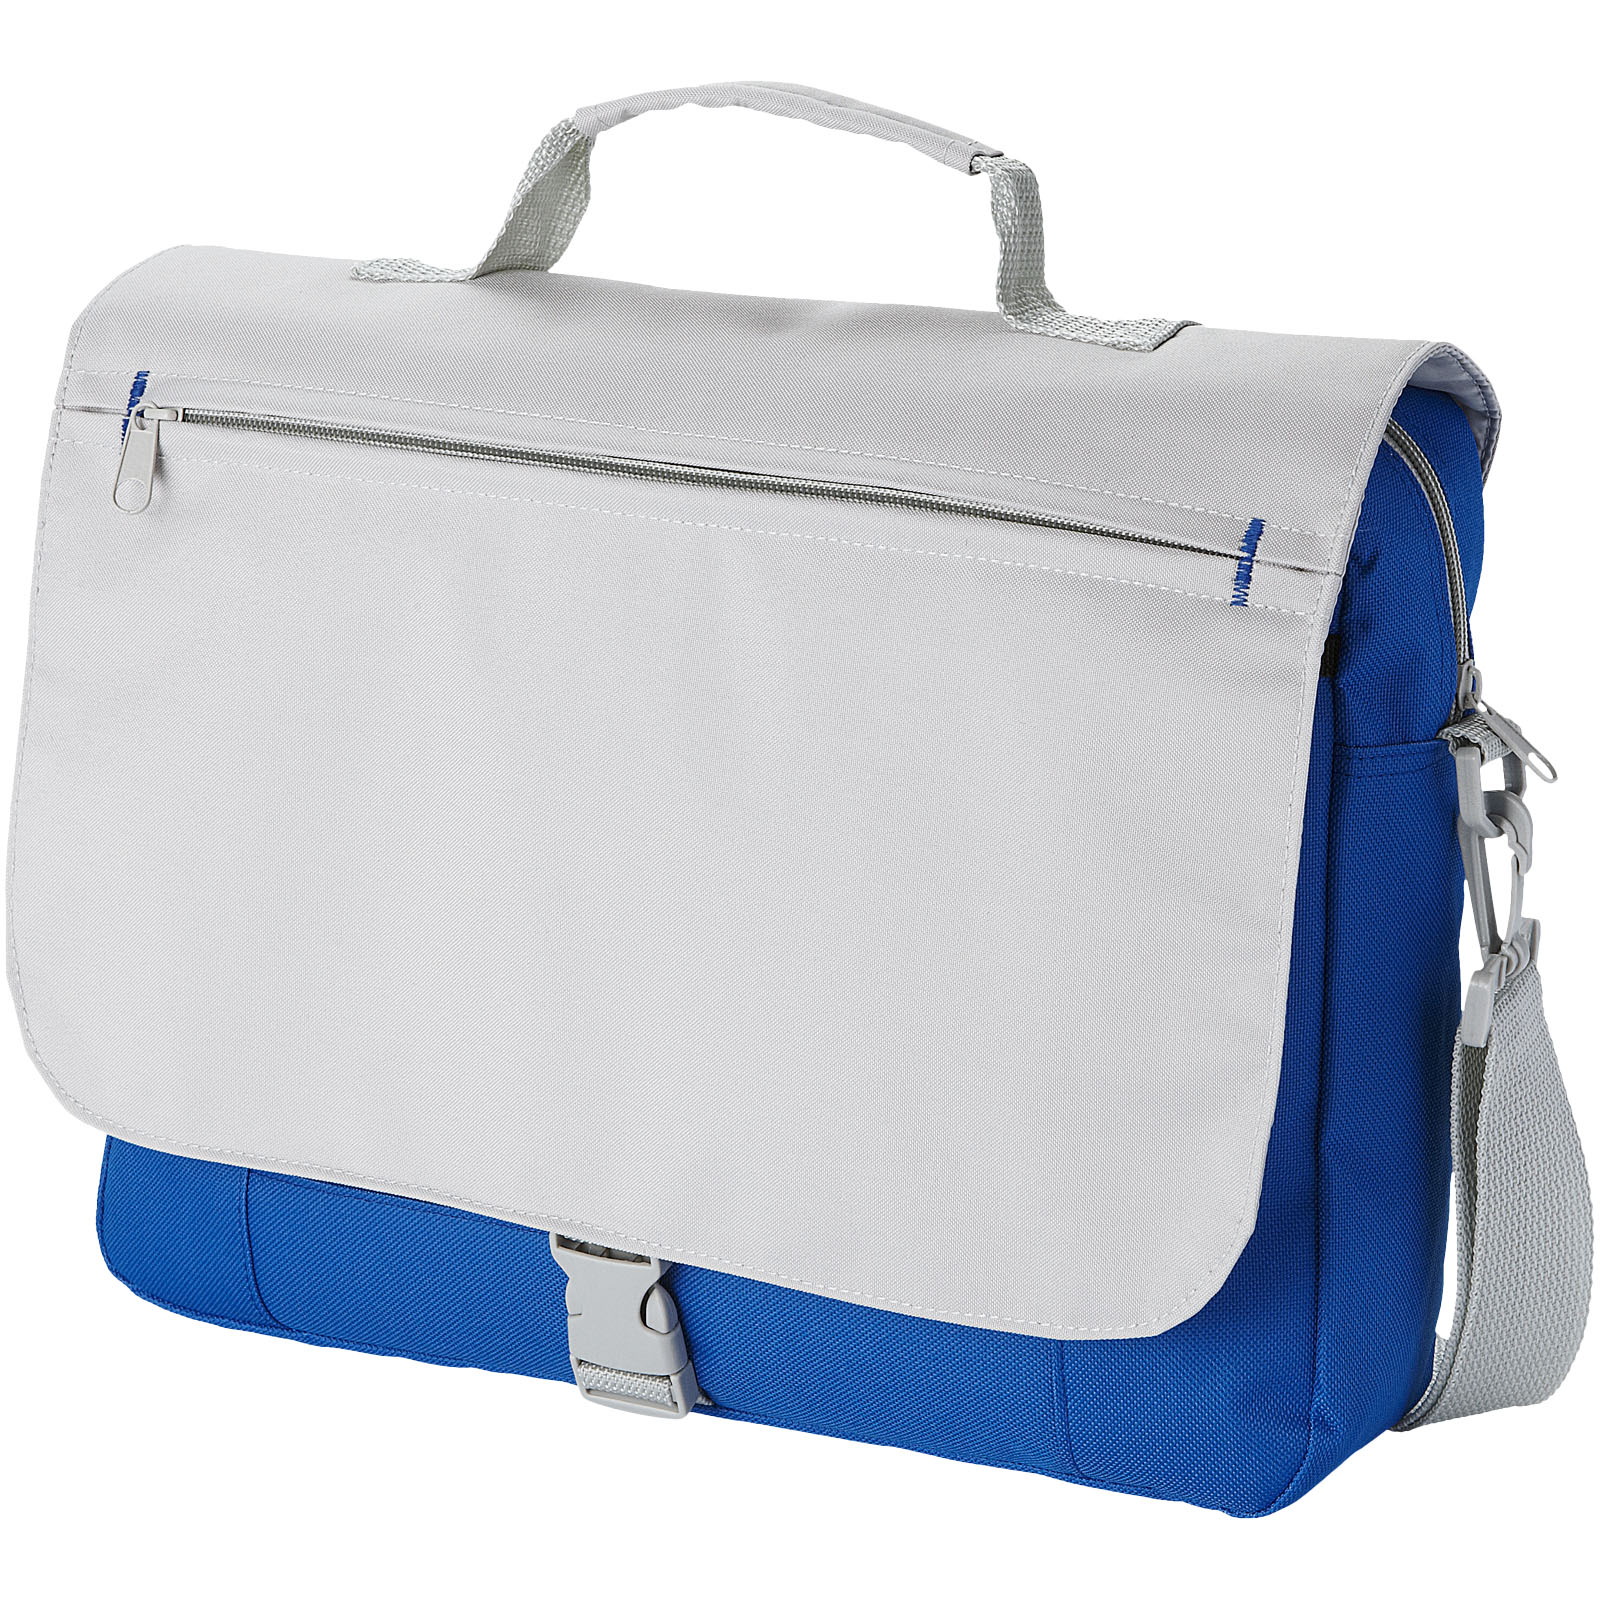 Adjustable Shoulder Bag - Kittisford - Denton